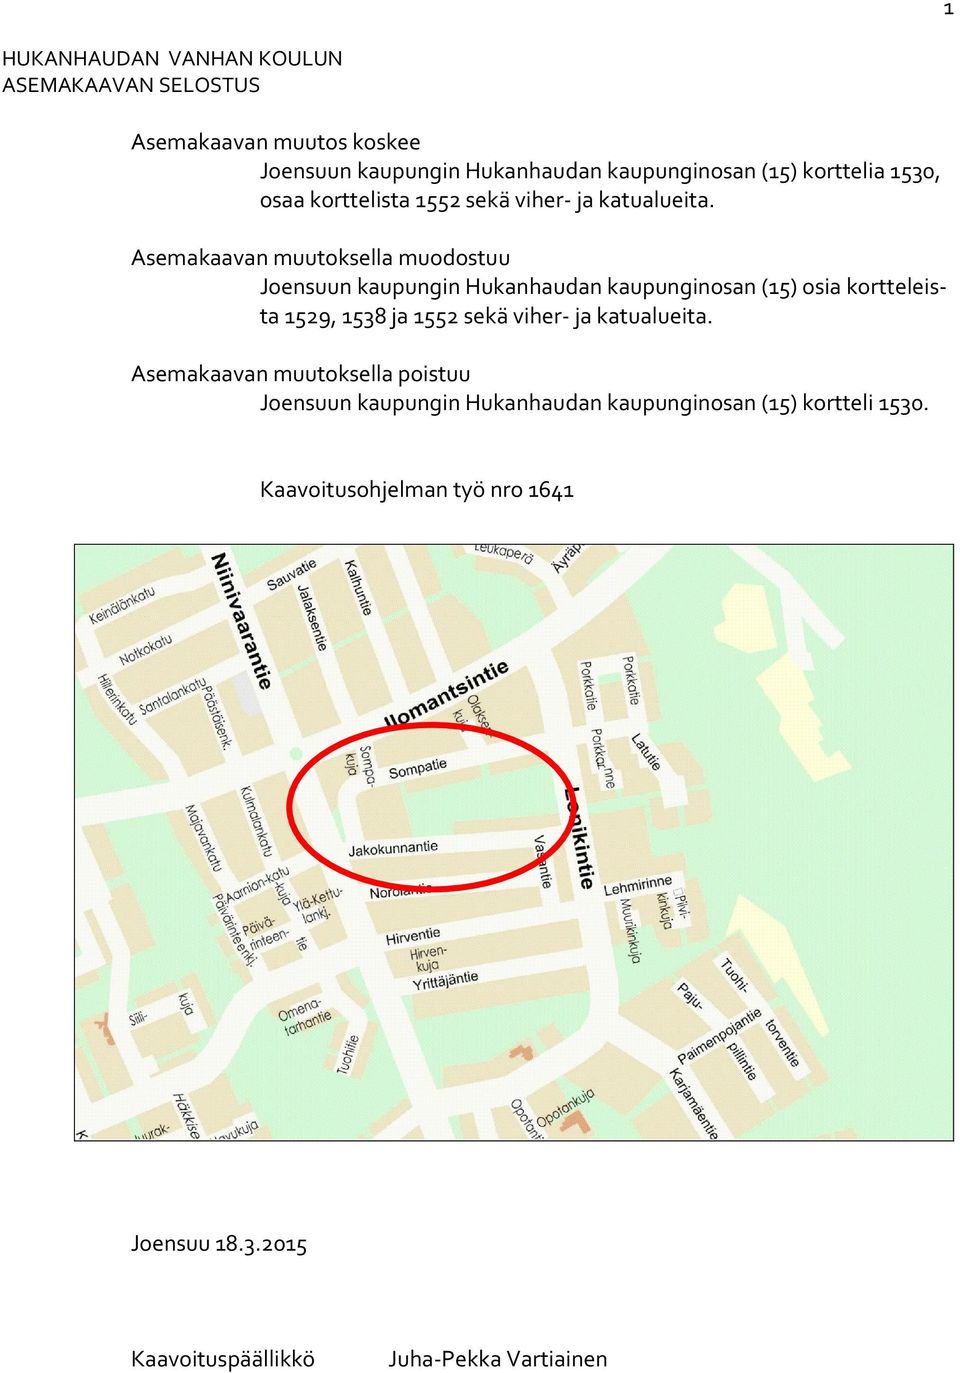 Asemakaavan muutoksella muodostuu Joensuun kaupungin Hukanhaudan kaupunginosan (15) osia kortteleista 1529, 1538 ja 1552 sekä